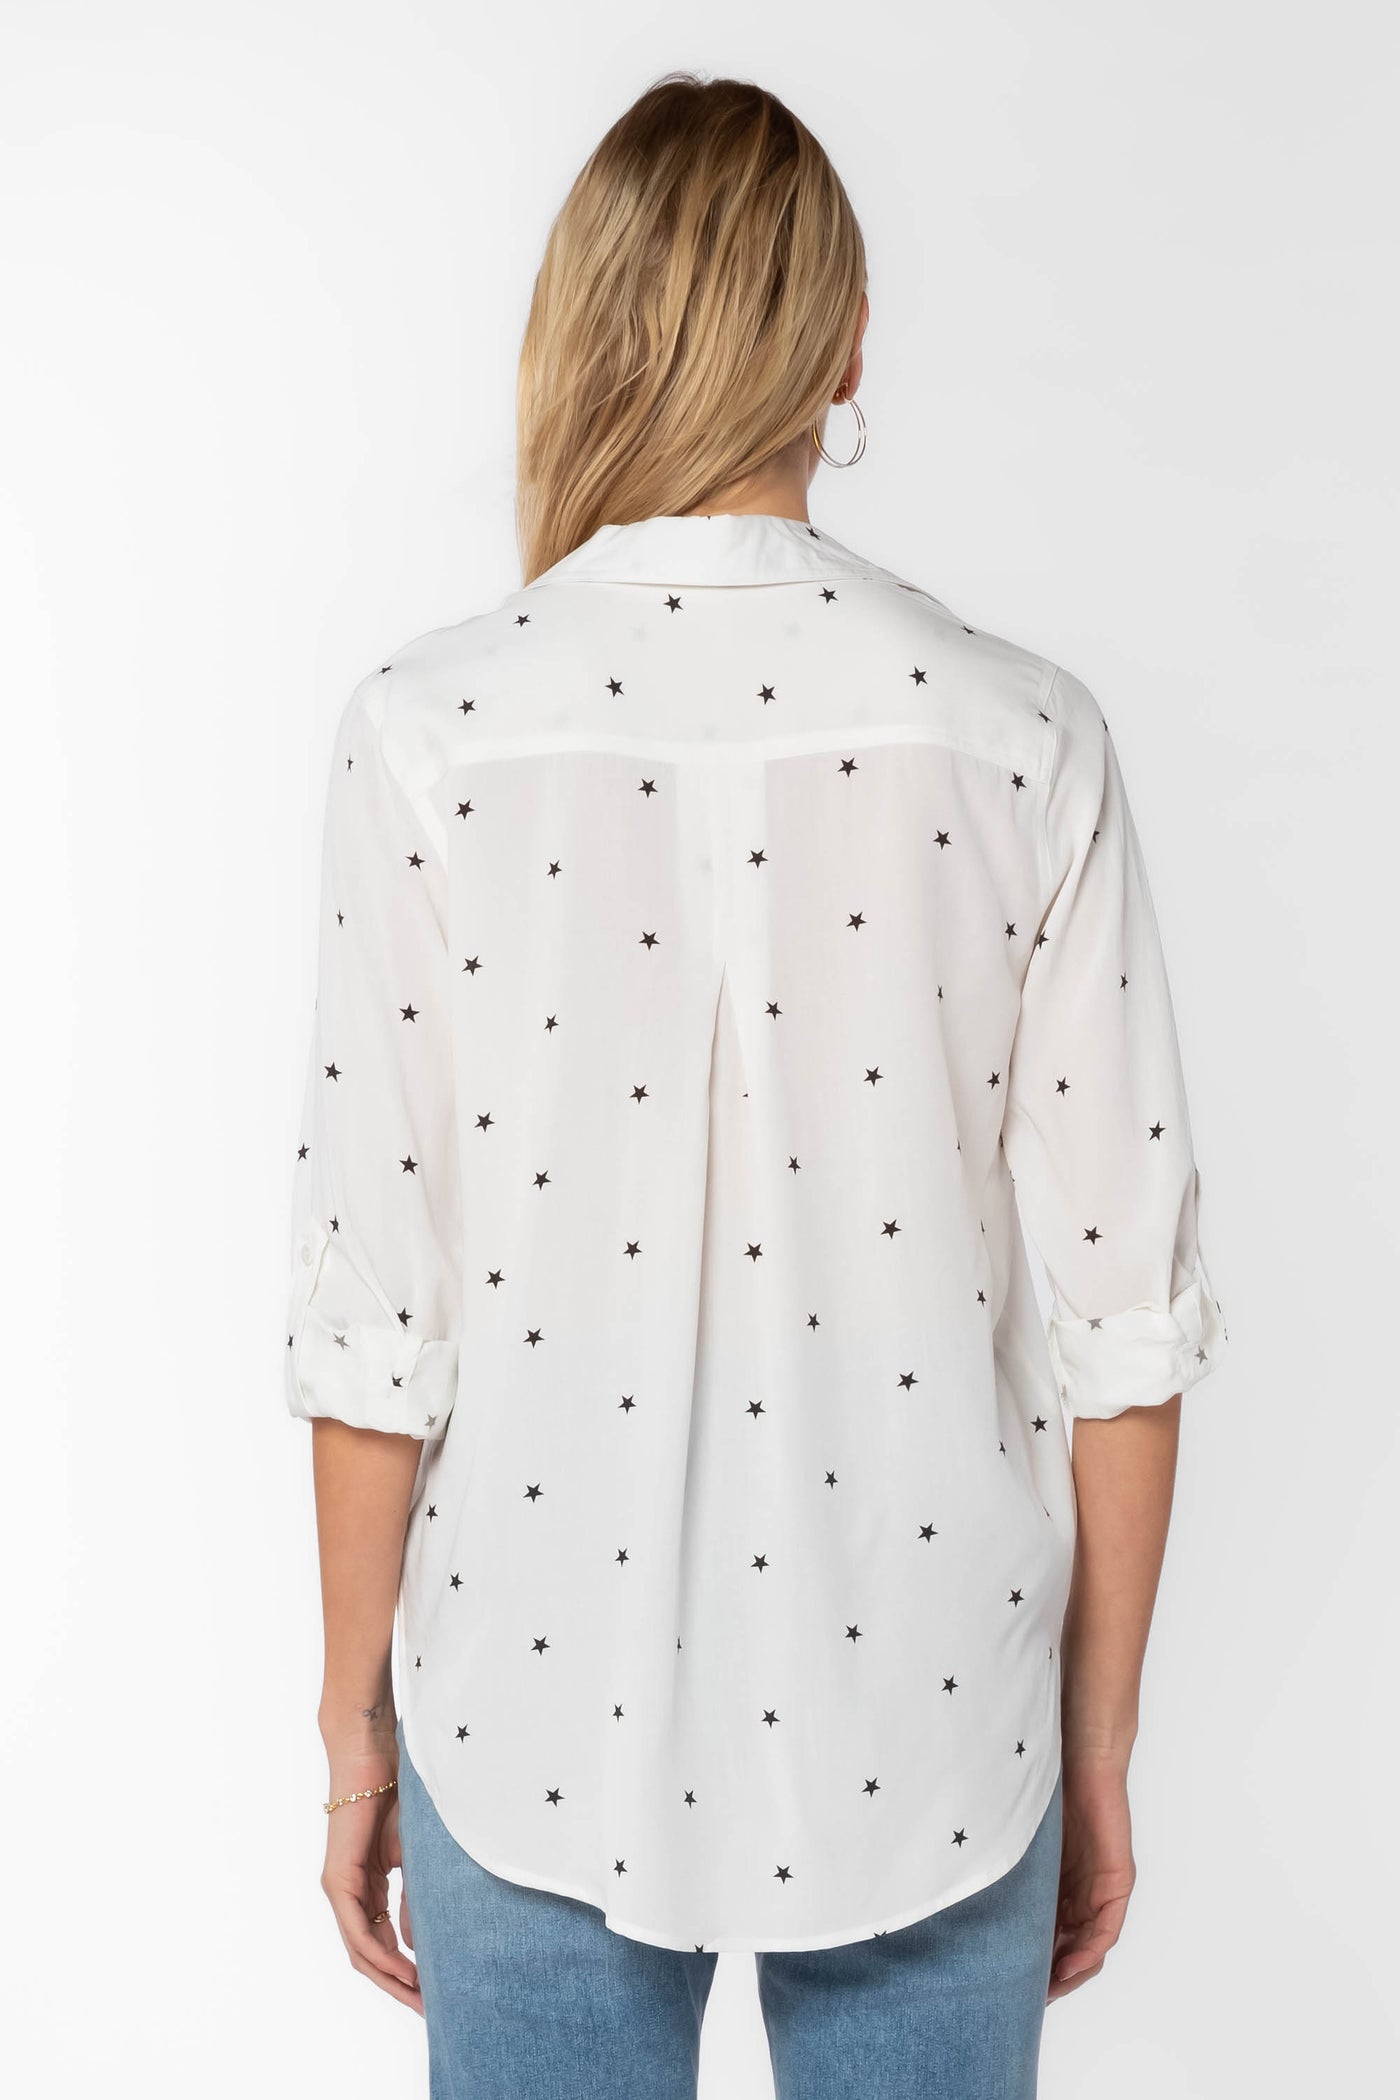 Elisa Stars Shirt by Velvet Heart Clothing: Elisa Stars Shirt